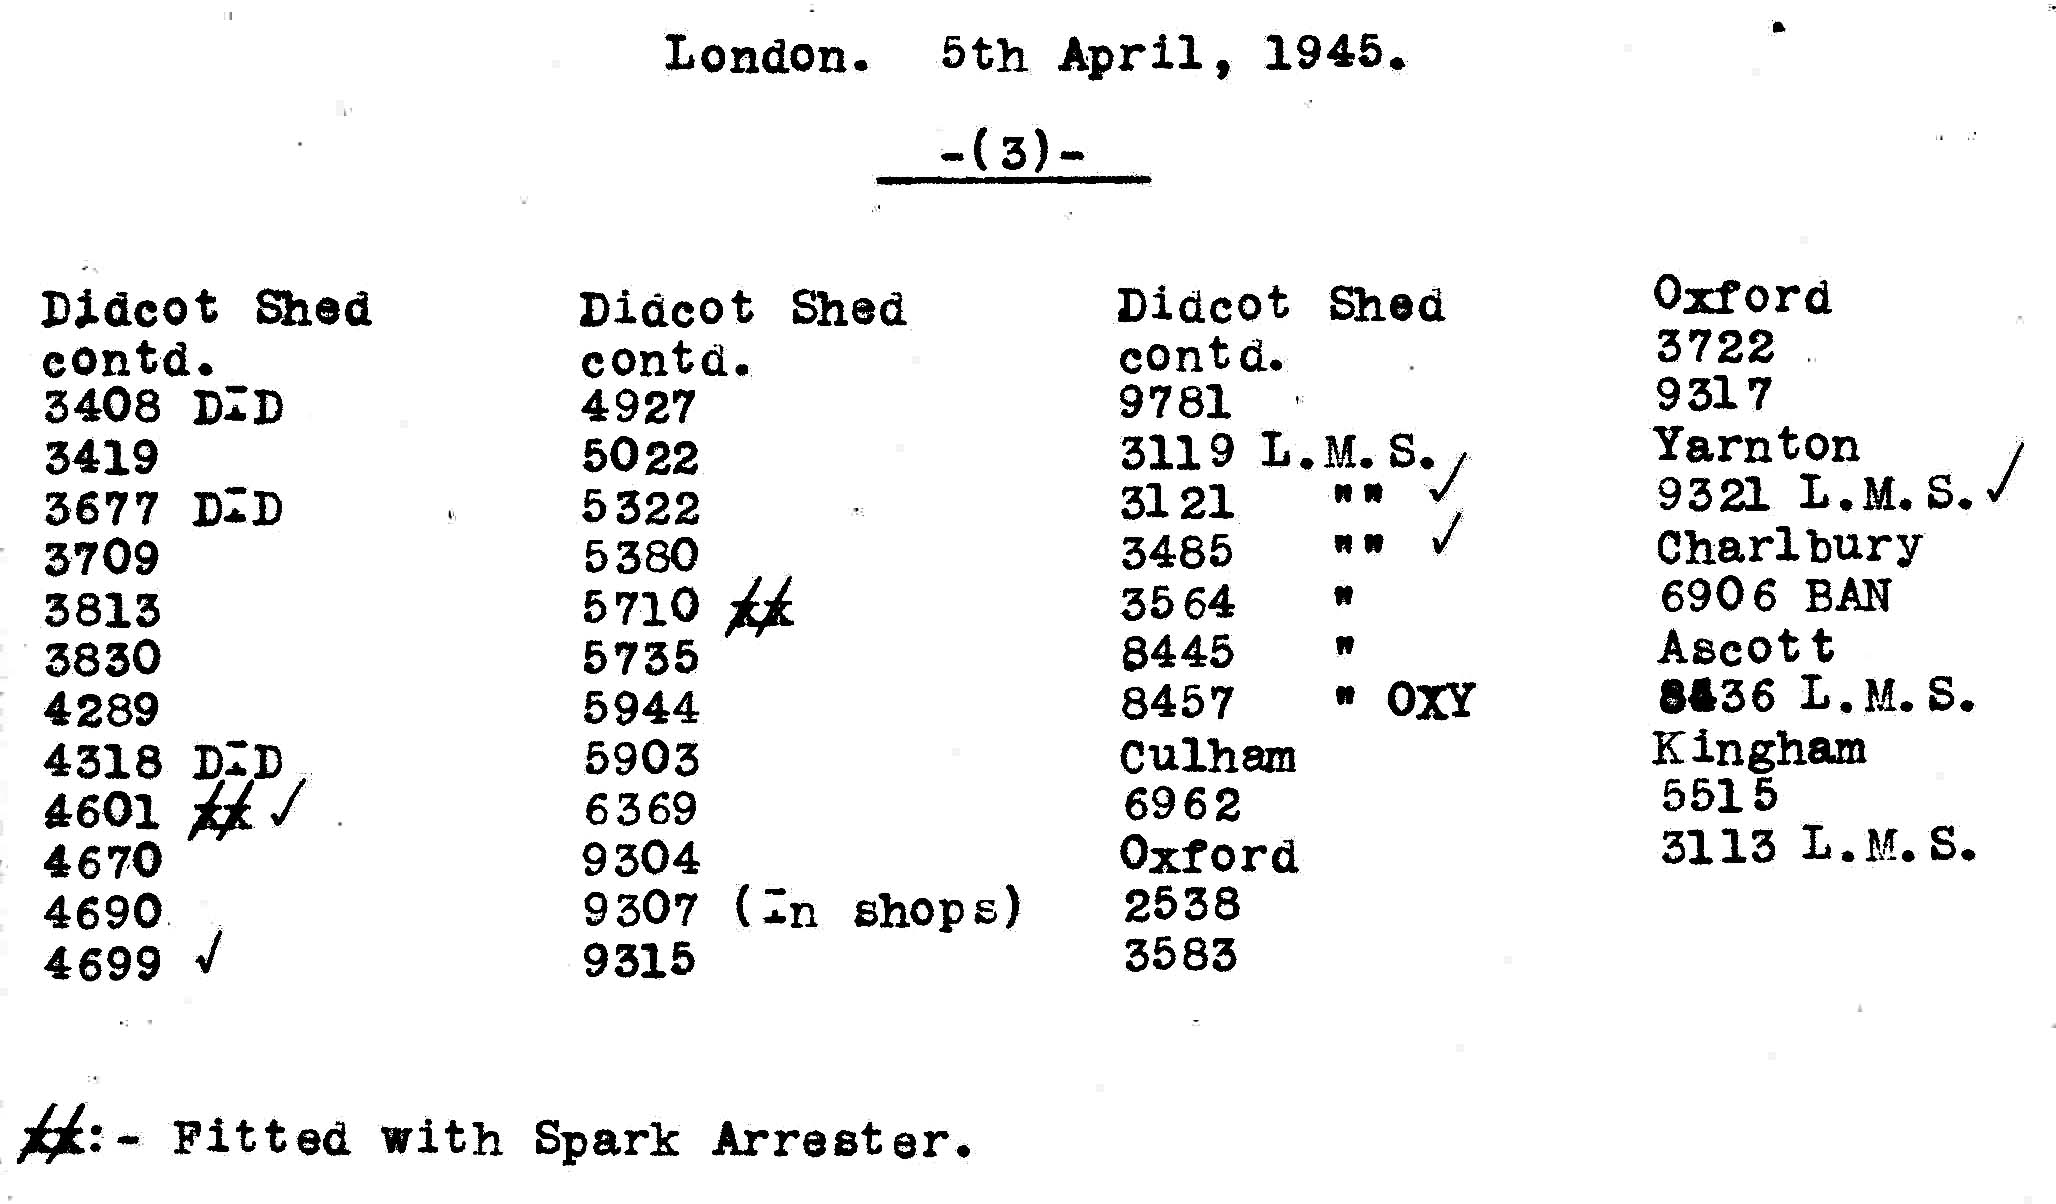 5th April 1945 - Trip to London.